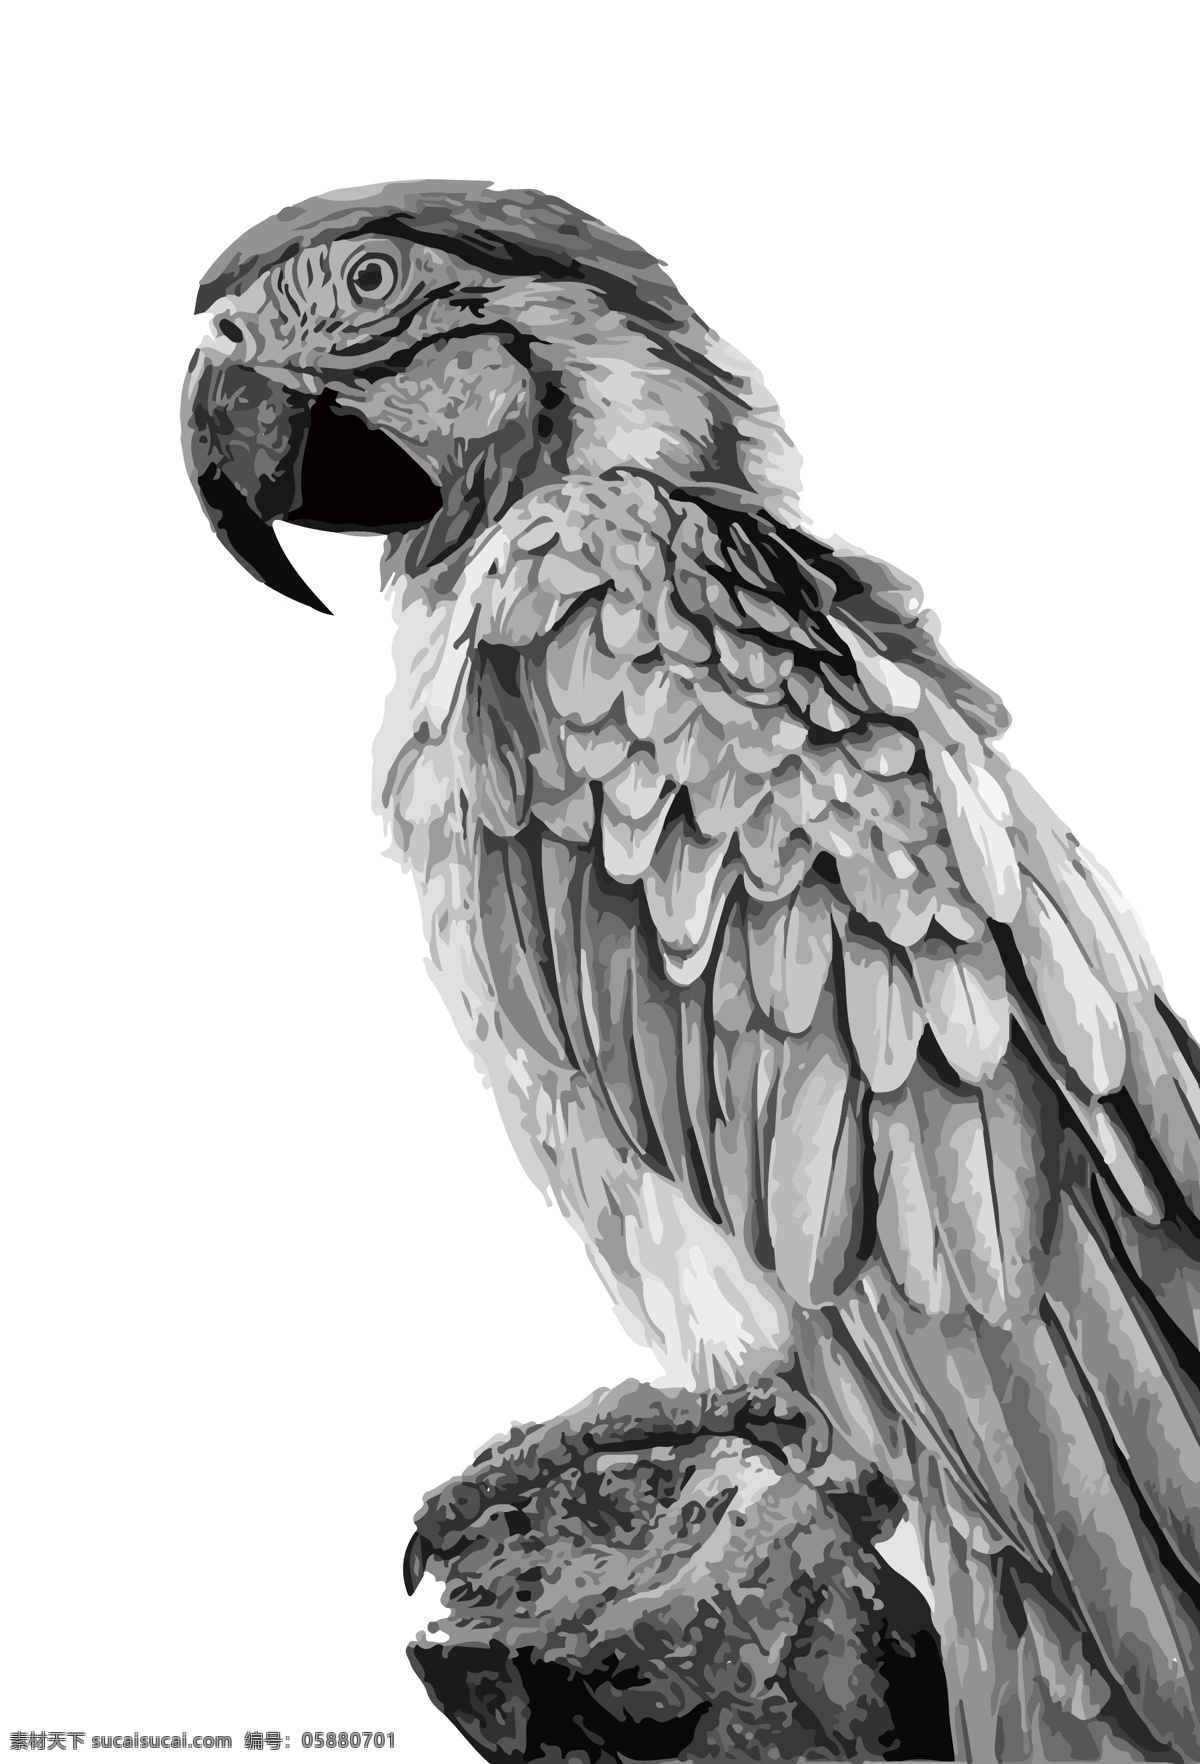 鹦鹉 鸟 素描 铅笔 画 素描手绘 铅笔画 鸟类 元素 鸟元素 小鸟元素